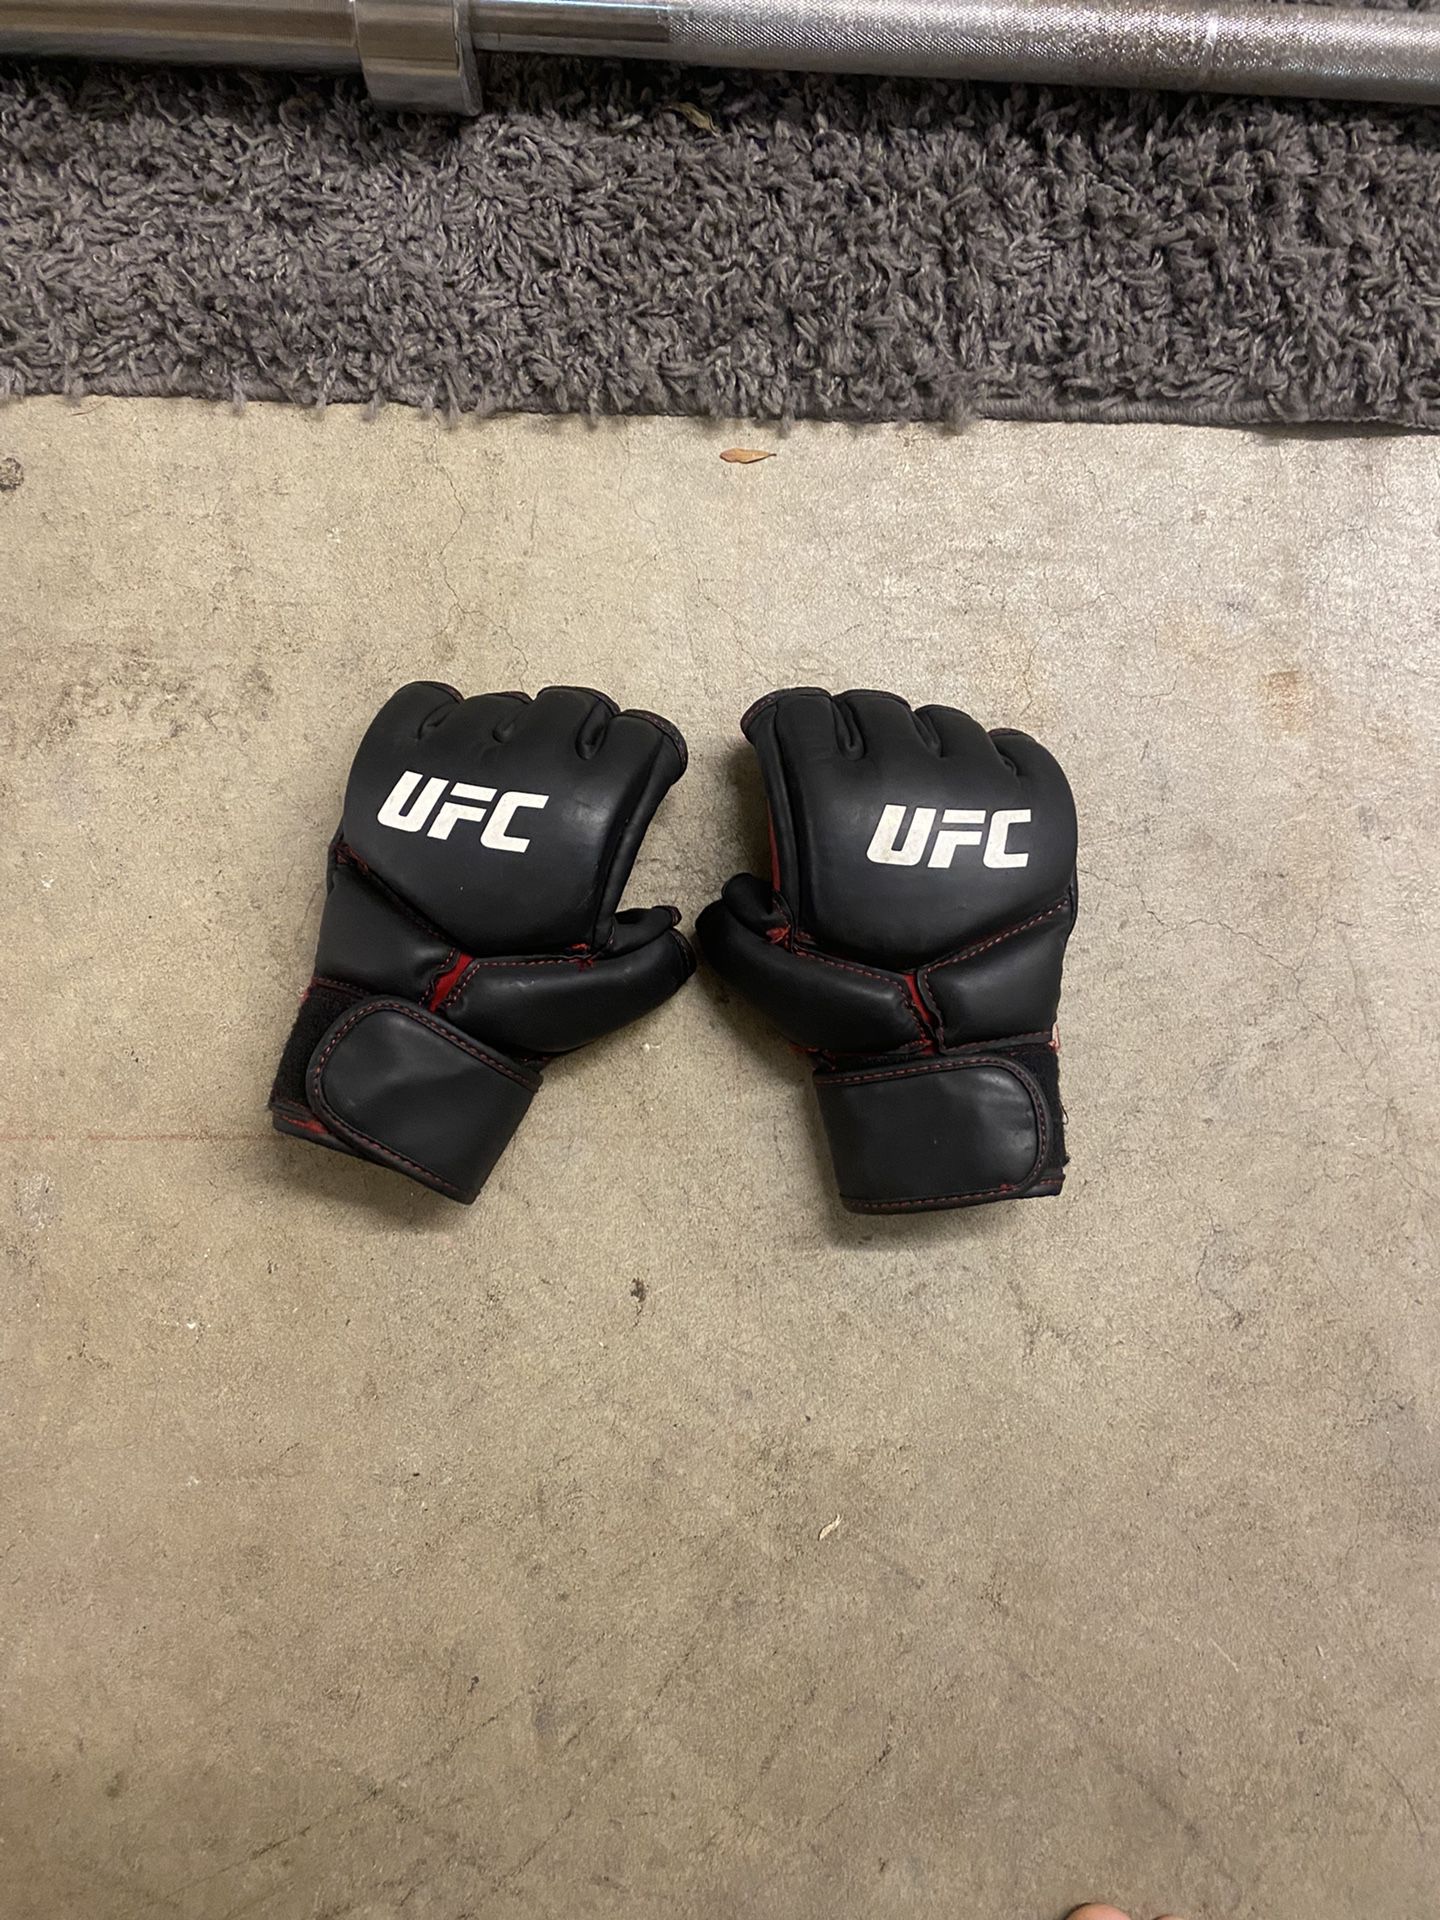 UFC MMA Style Gloves